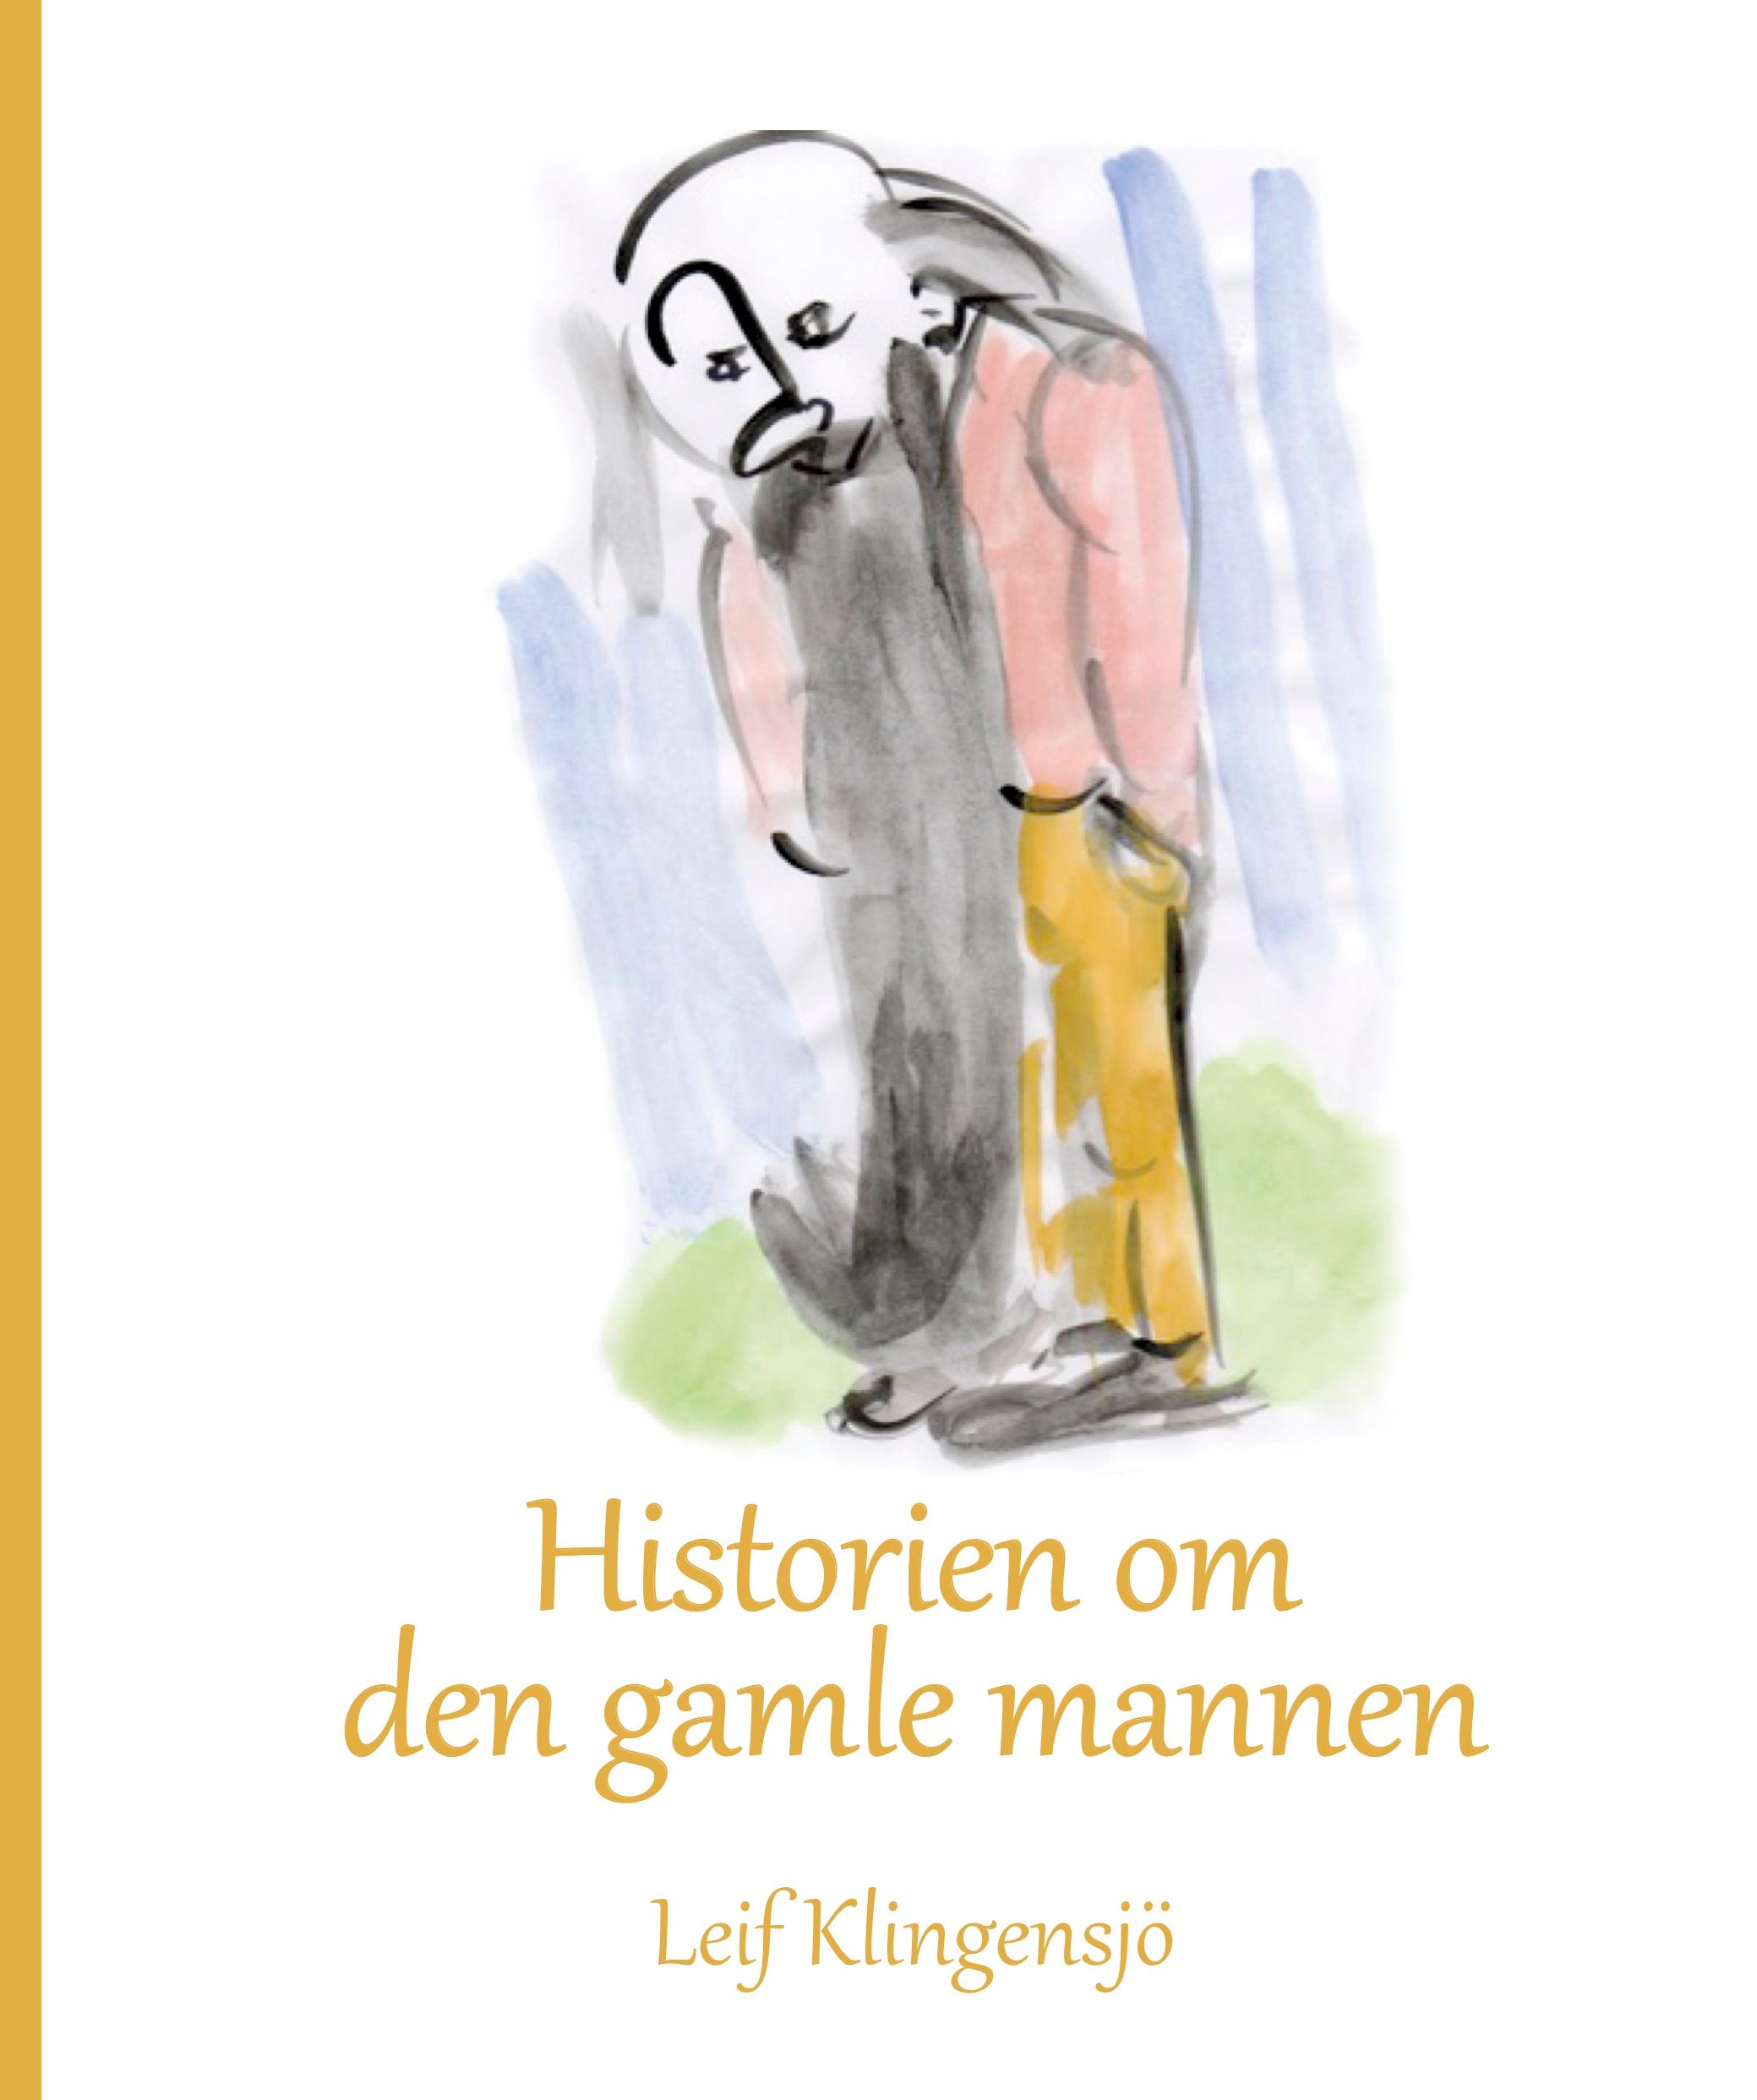 Historien om den gamle mannen, eBook by Leif Klingensjö